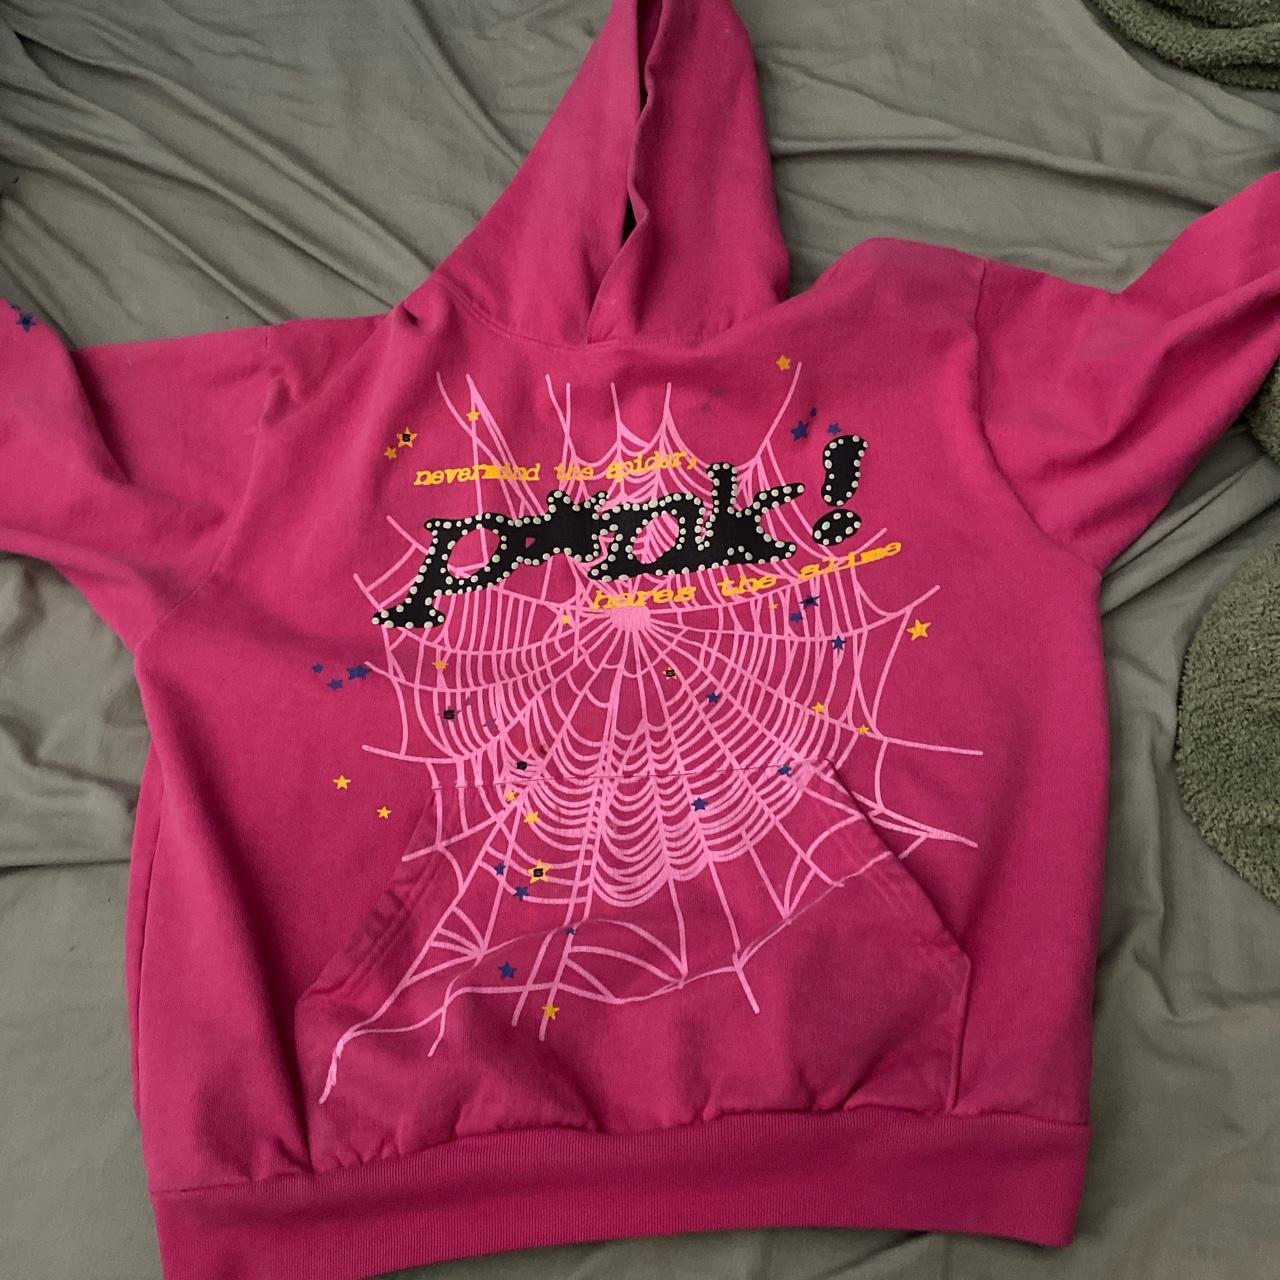 Pink sp5der hoodie - Depop